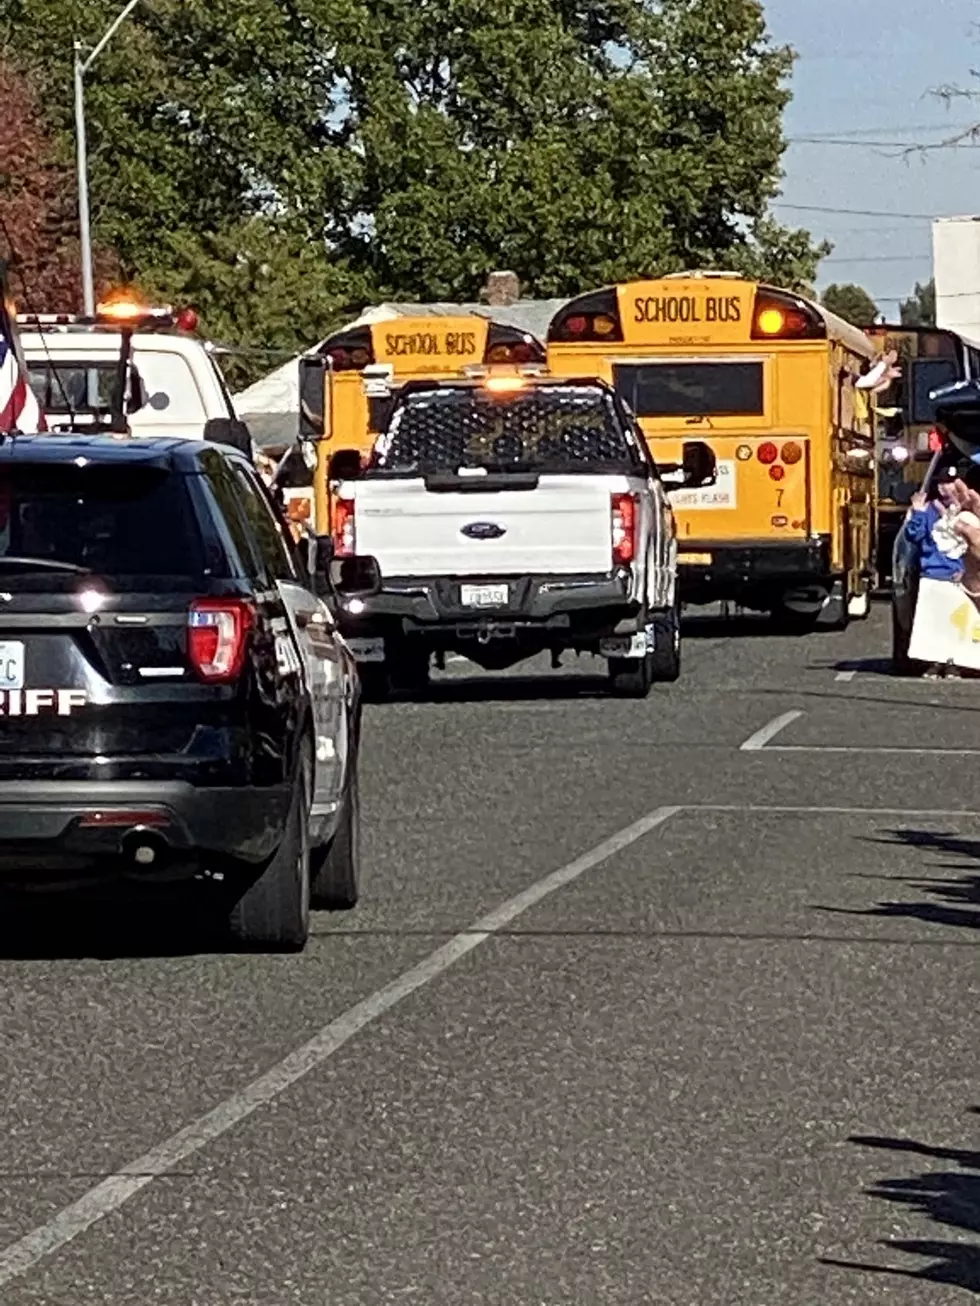 Hundreds Attend Parade to Honor Slain School Bus Driver